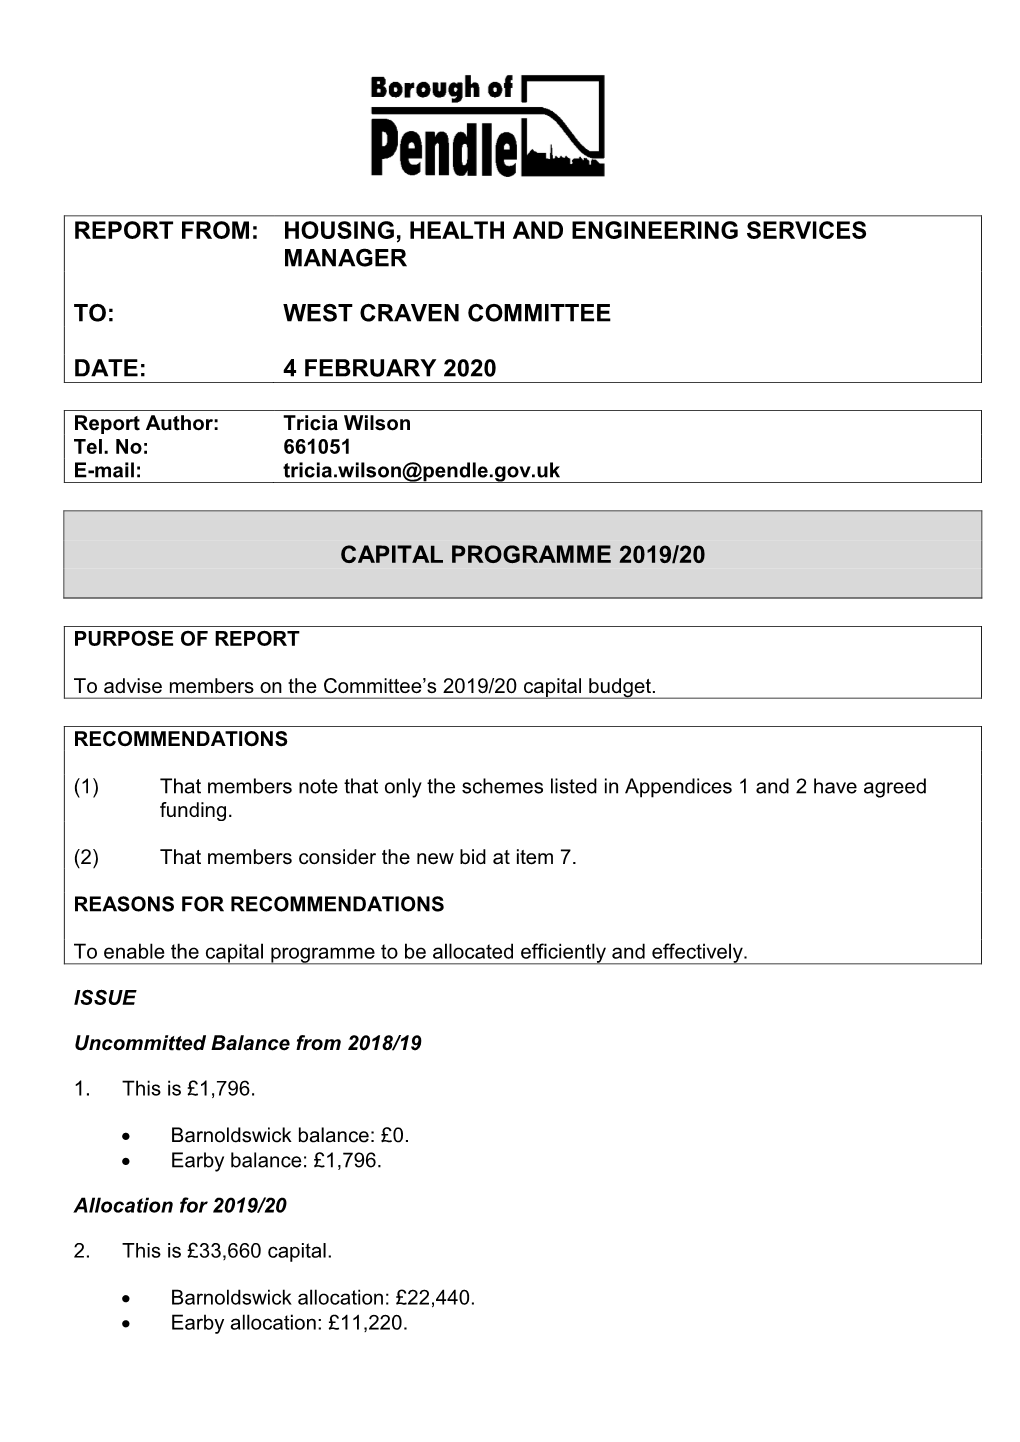 Capital Programme 2019/20